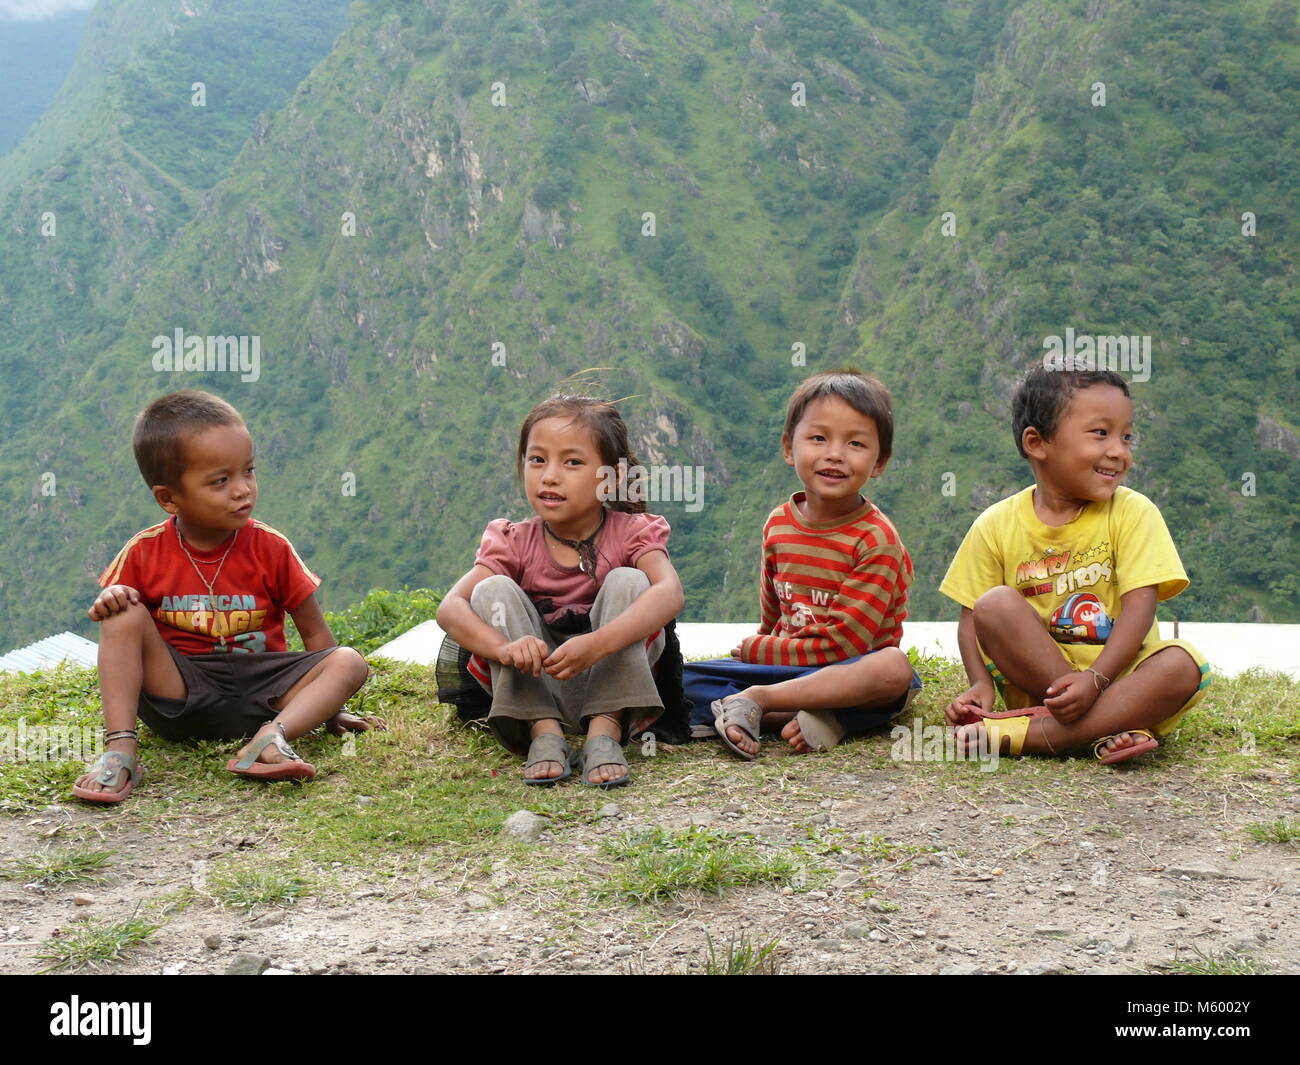 Tallo Chipla, Népal, 21 septembre 2014 : Réunion d'enfants népalais, les populations locales au Népal - Circuit de l'Annapurna trek au Népal Banque D'Images